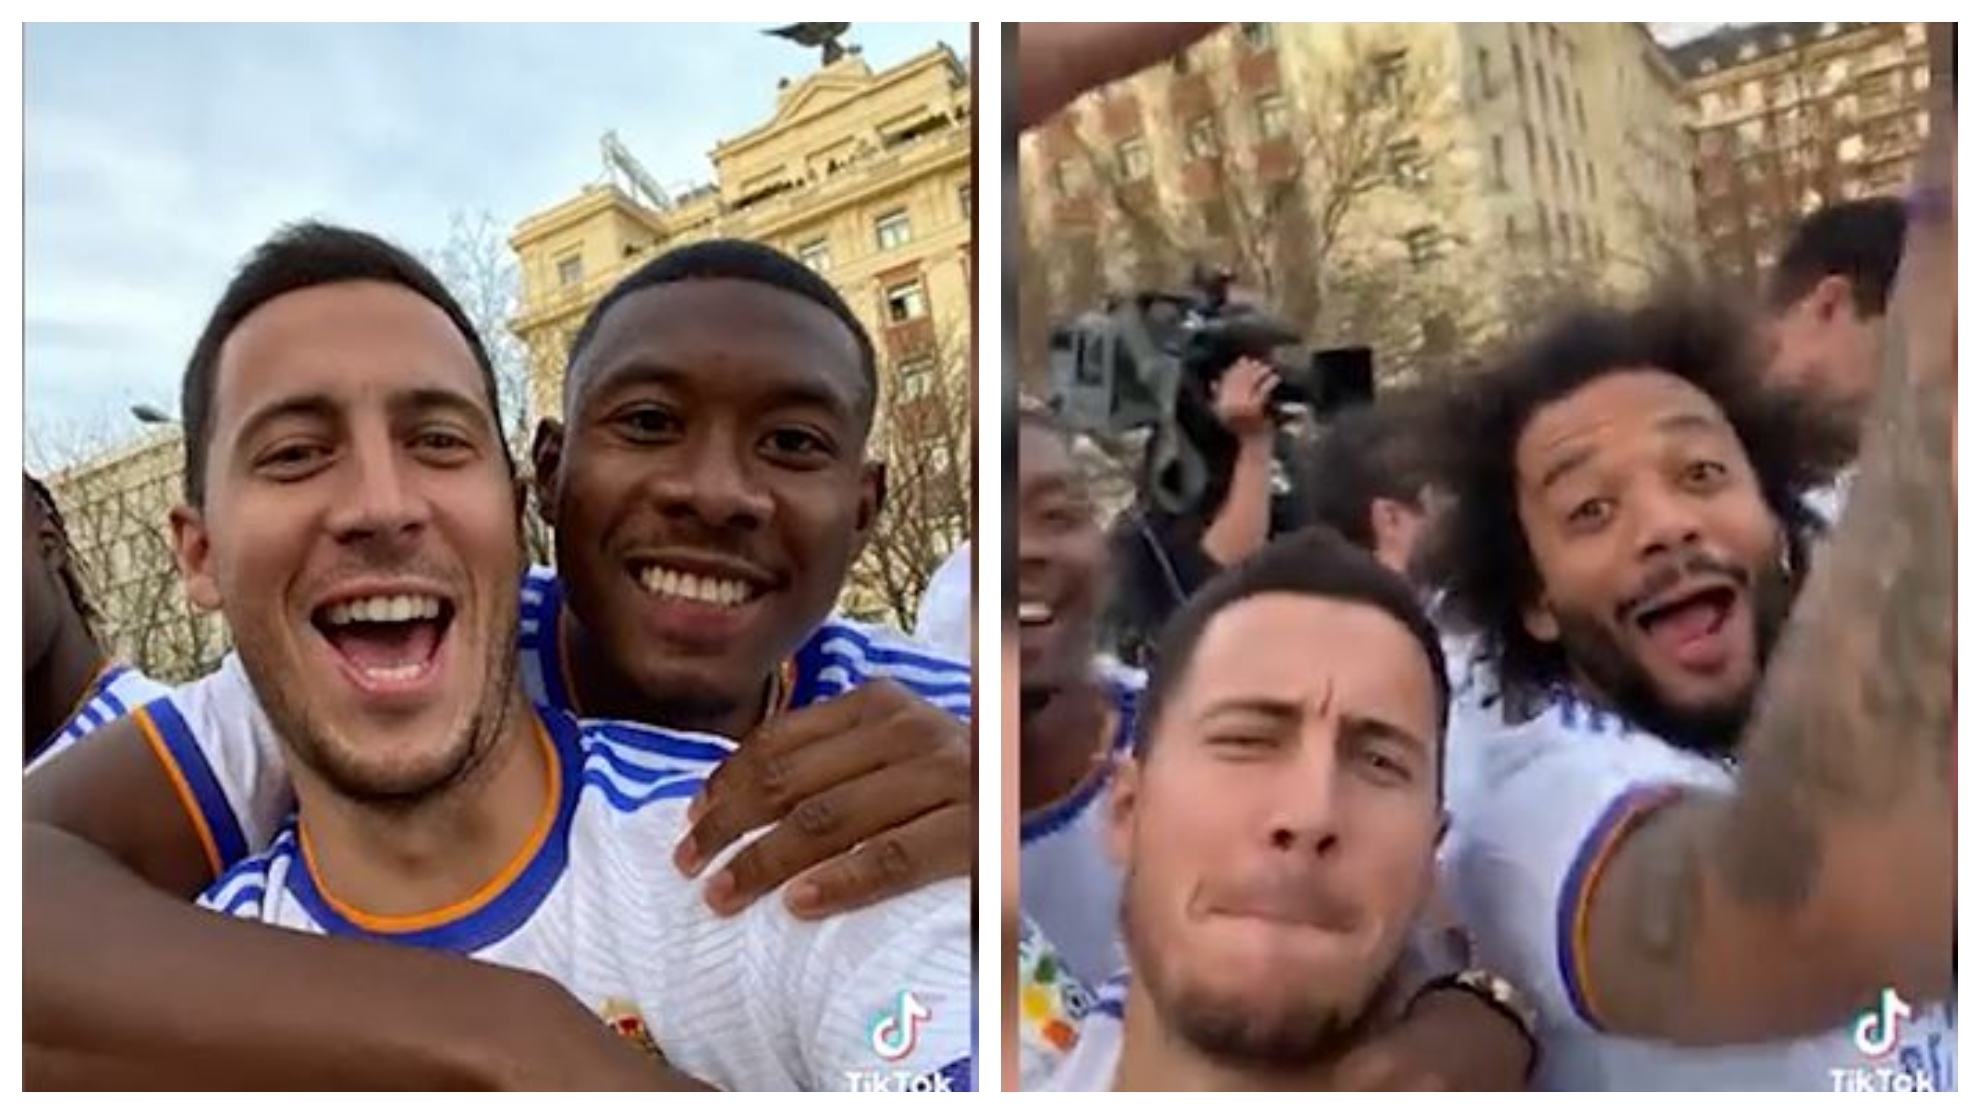 El típico "no hay hue***" de un aficionado madridista que acaba con selfies de Hazard